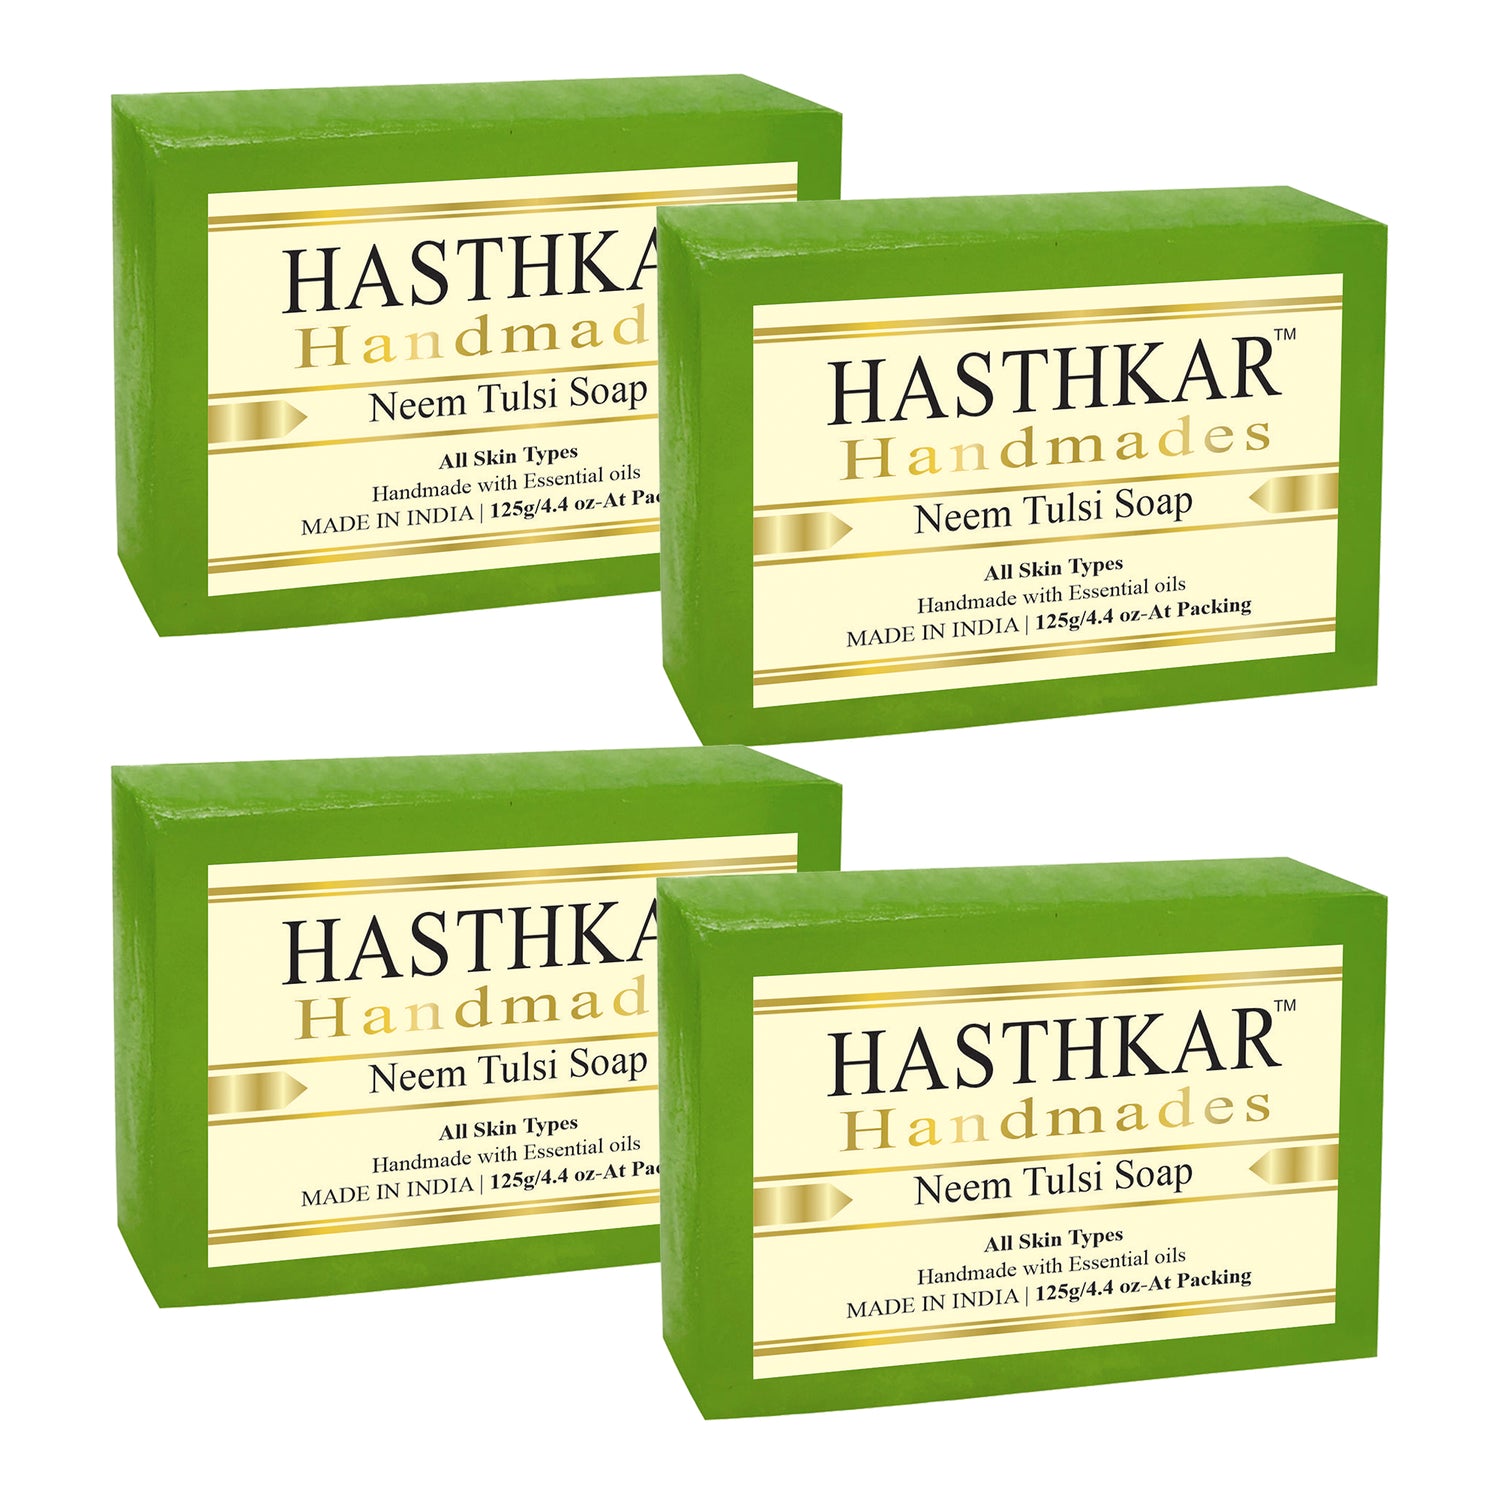 Hasthkar handmades neem tulsi bathing soap men women pack of 4